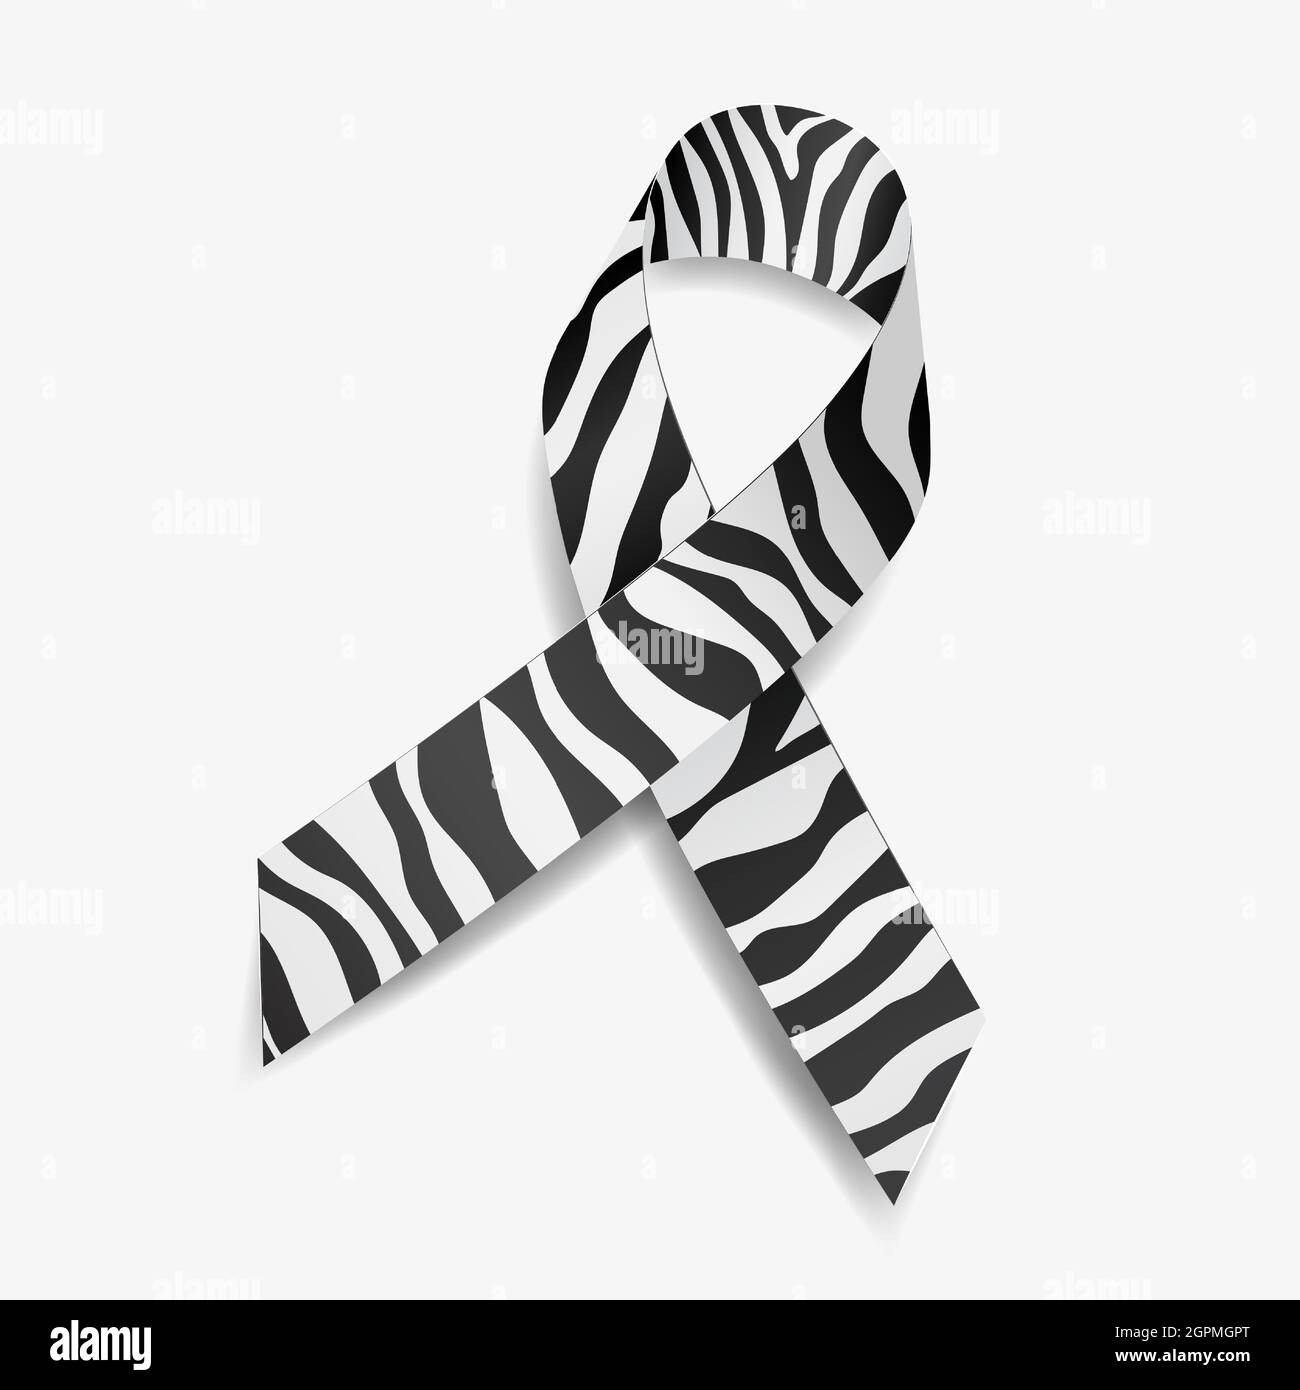 Zebra nastro consapevolezza cancro carcinoide, sindrome di Ehlers-Danlos, malattie rare e disturbi. Isolato su sfondo bianco. Illustrazione vettoriale. Illustrazione Vettoriale